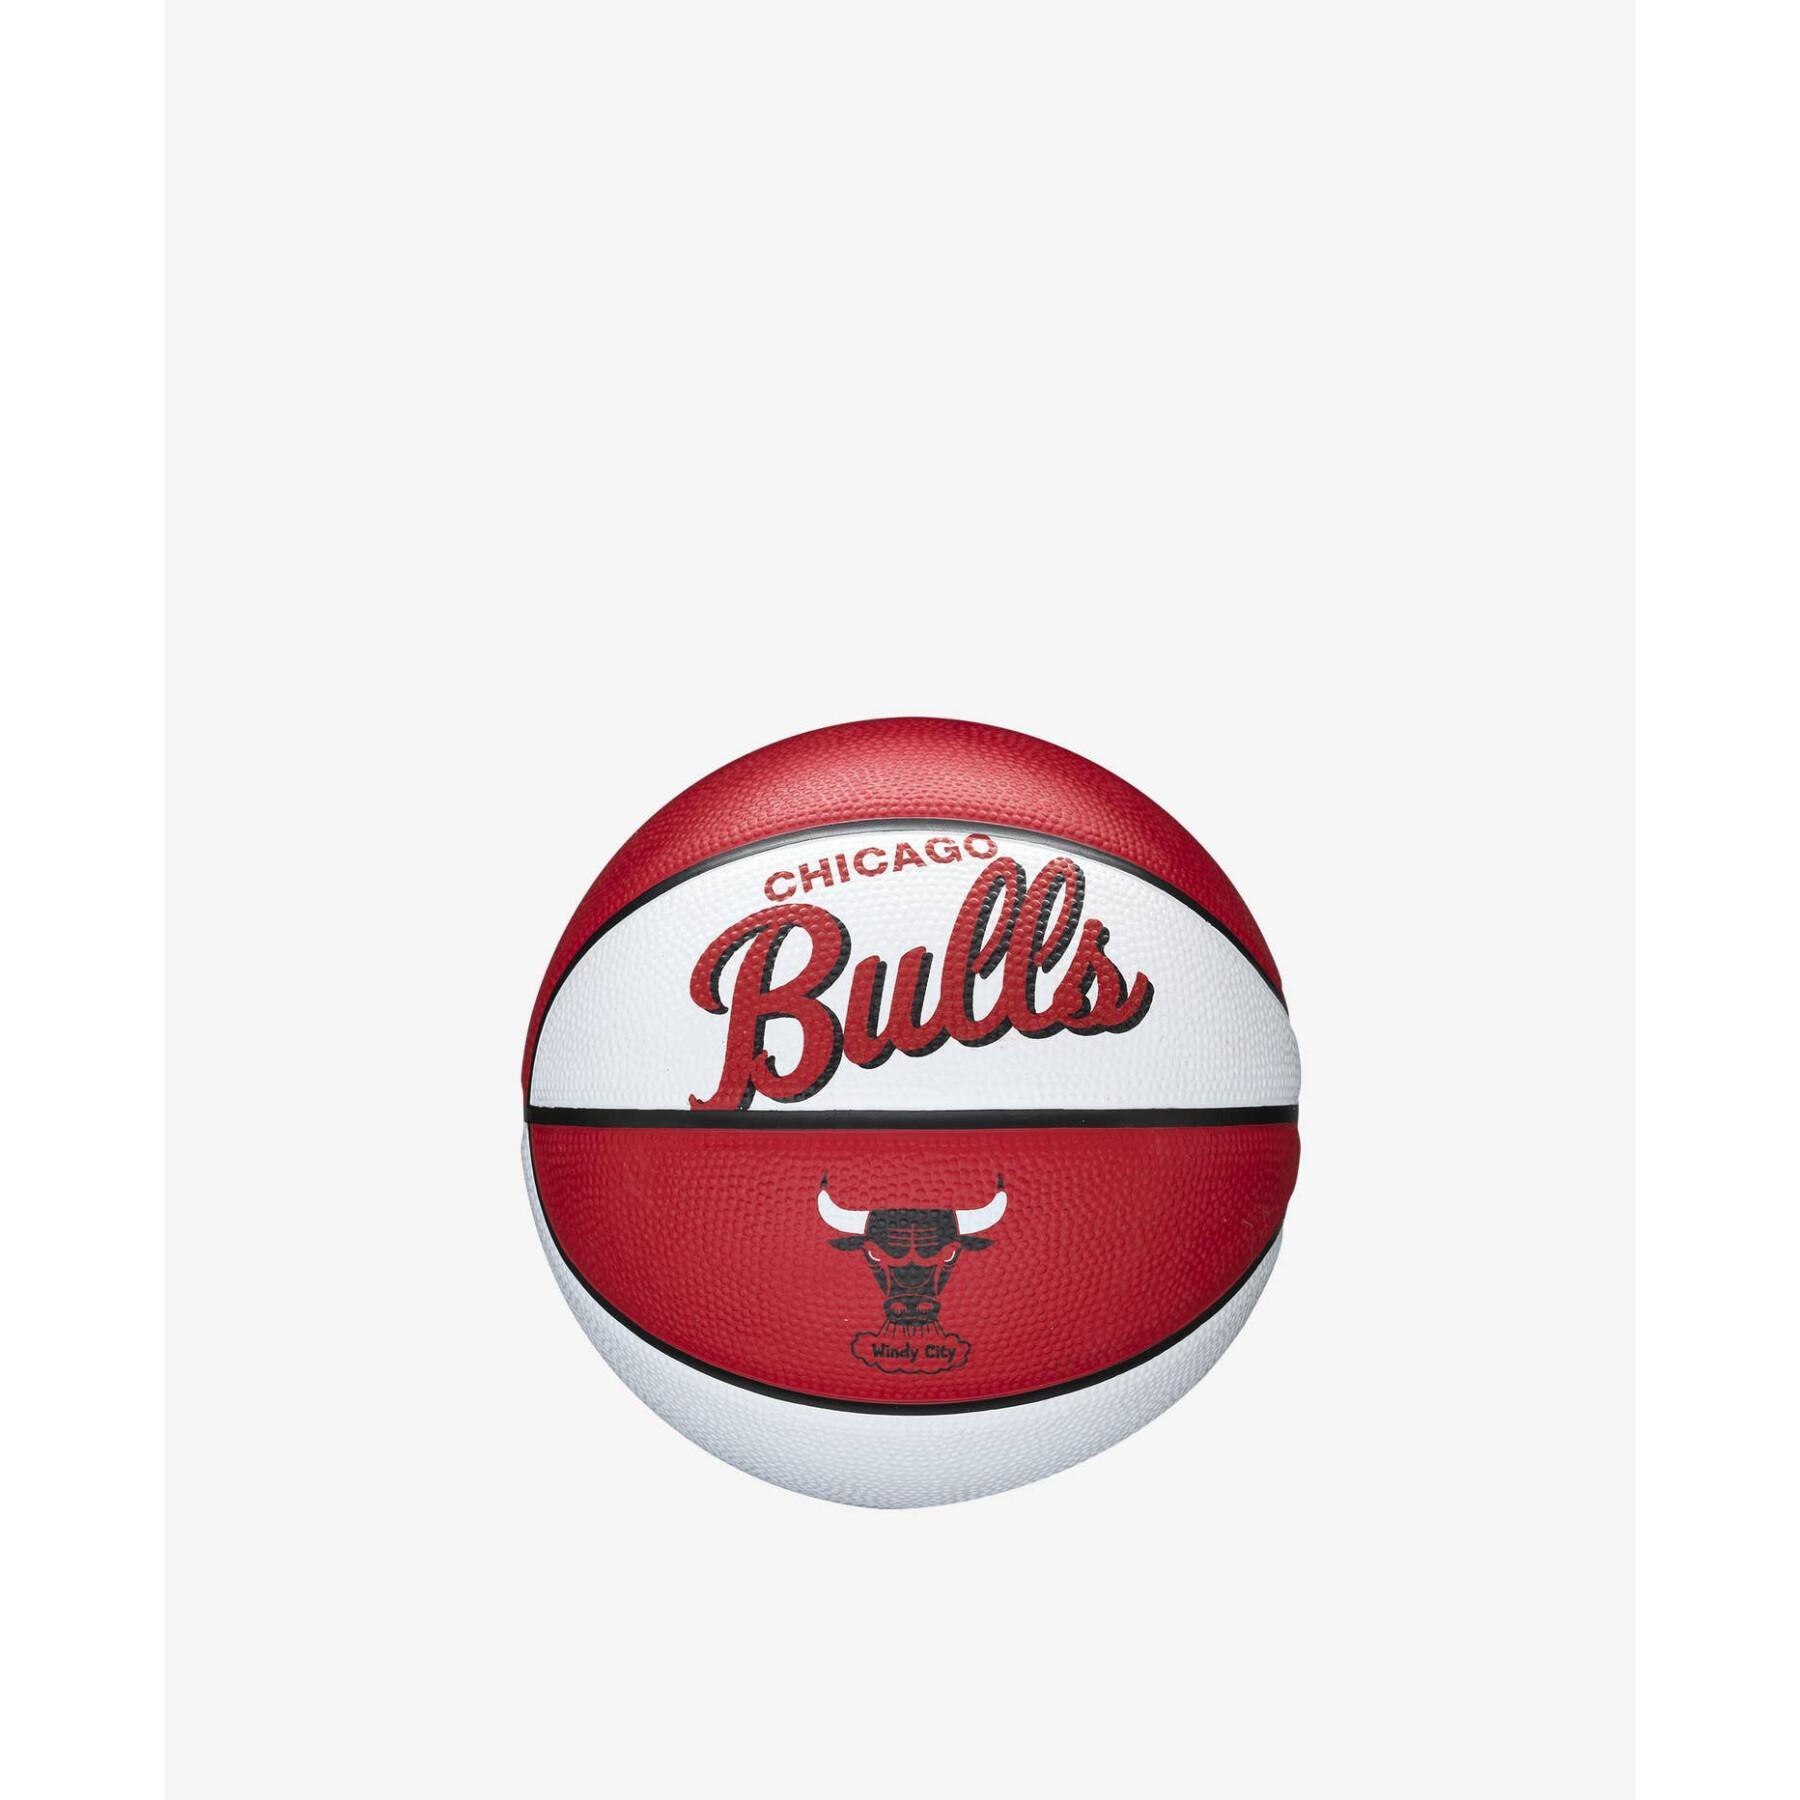 Minibalón Chicago Bulls Nba Team Retro 2021/22